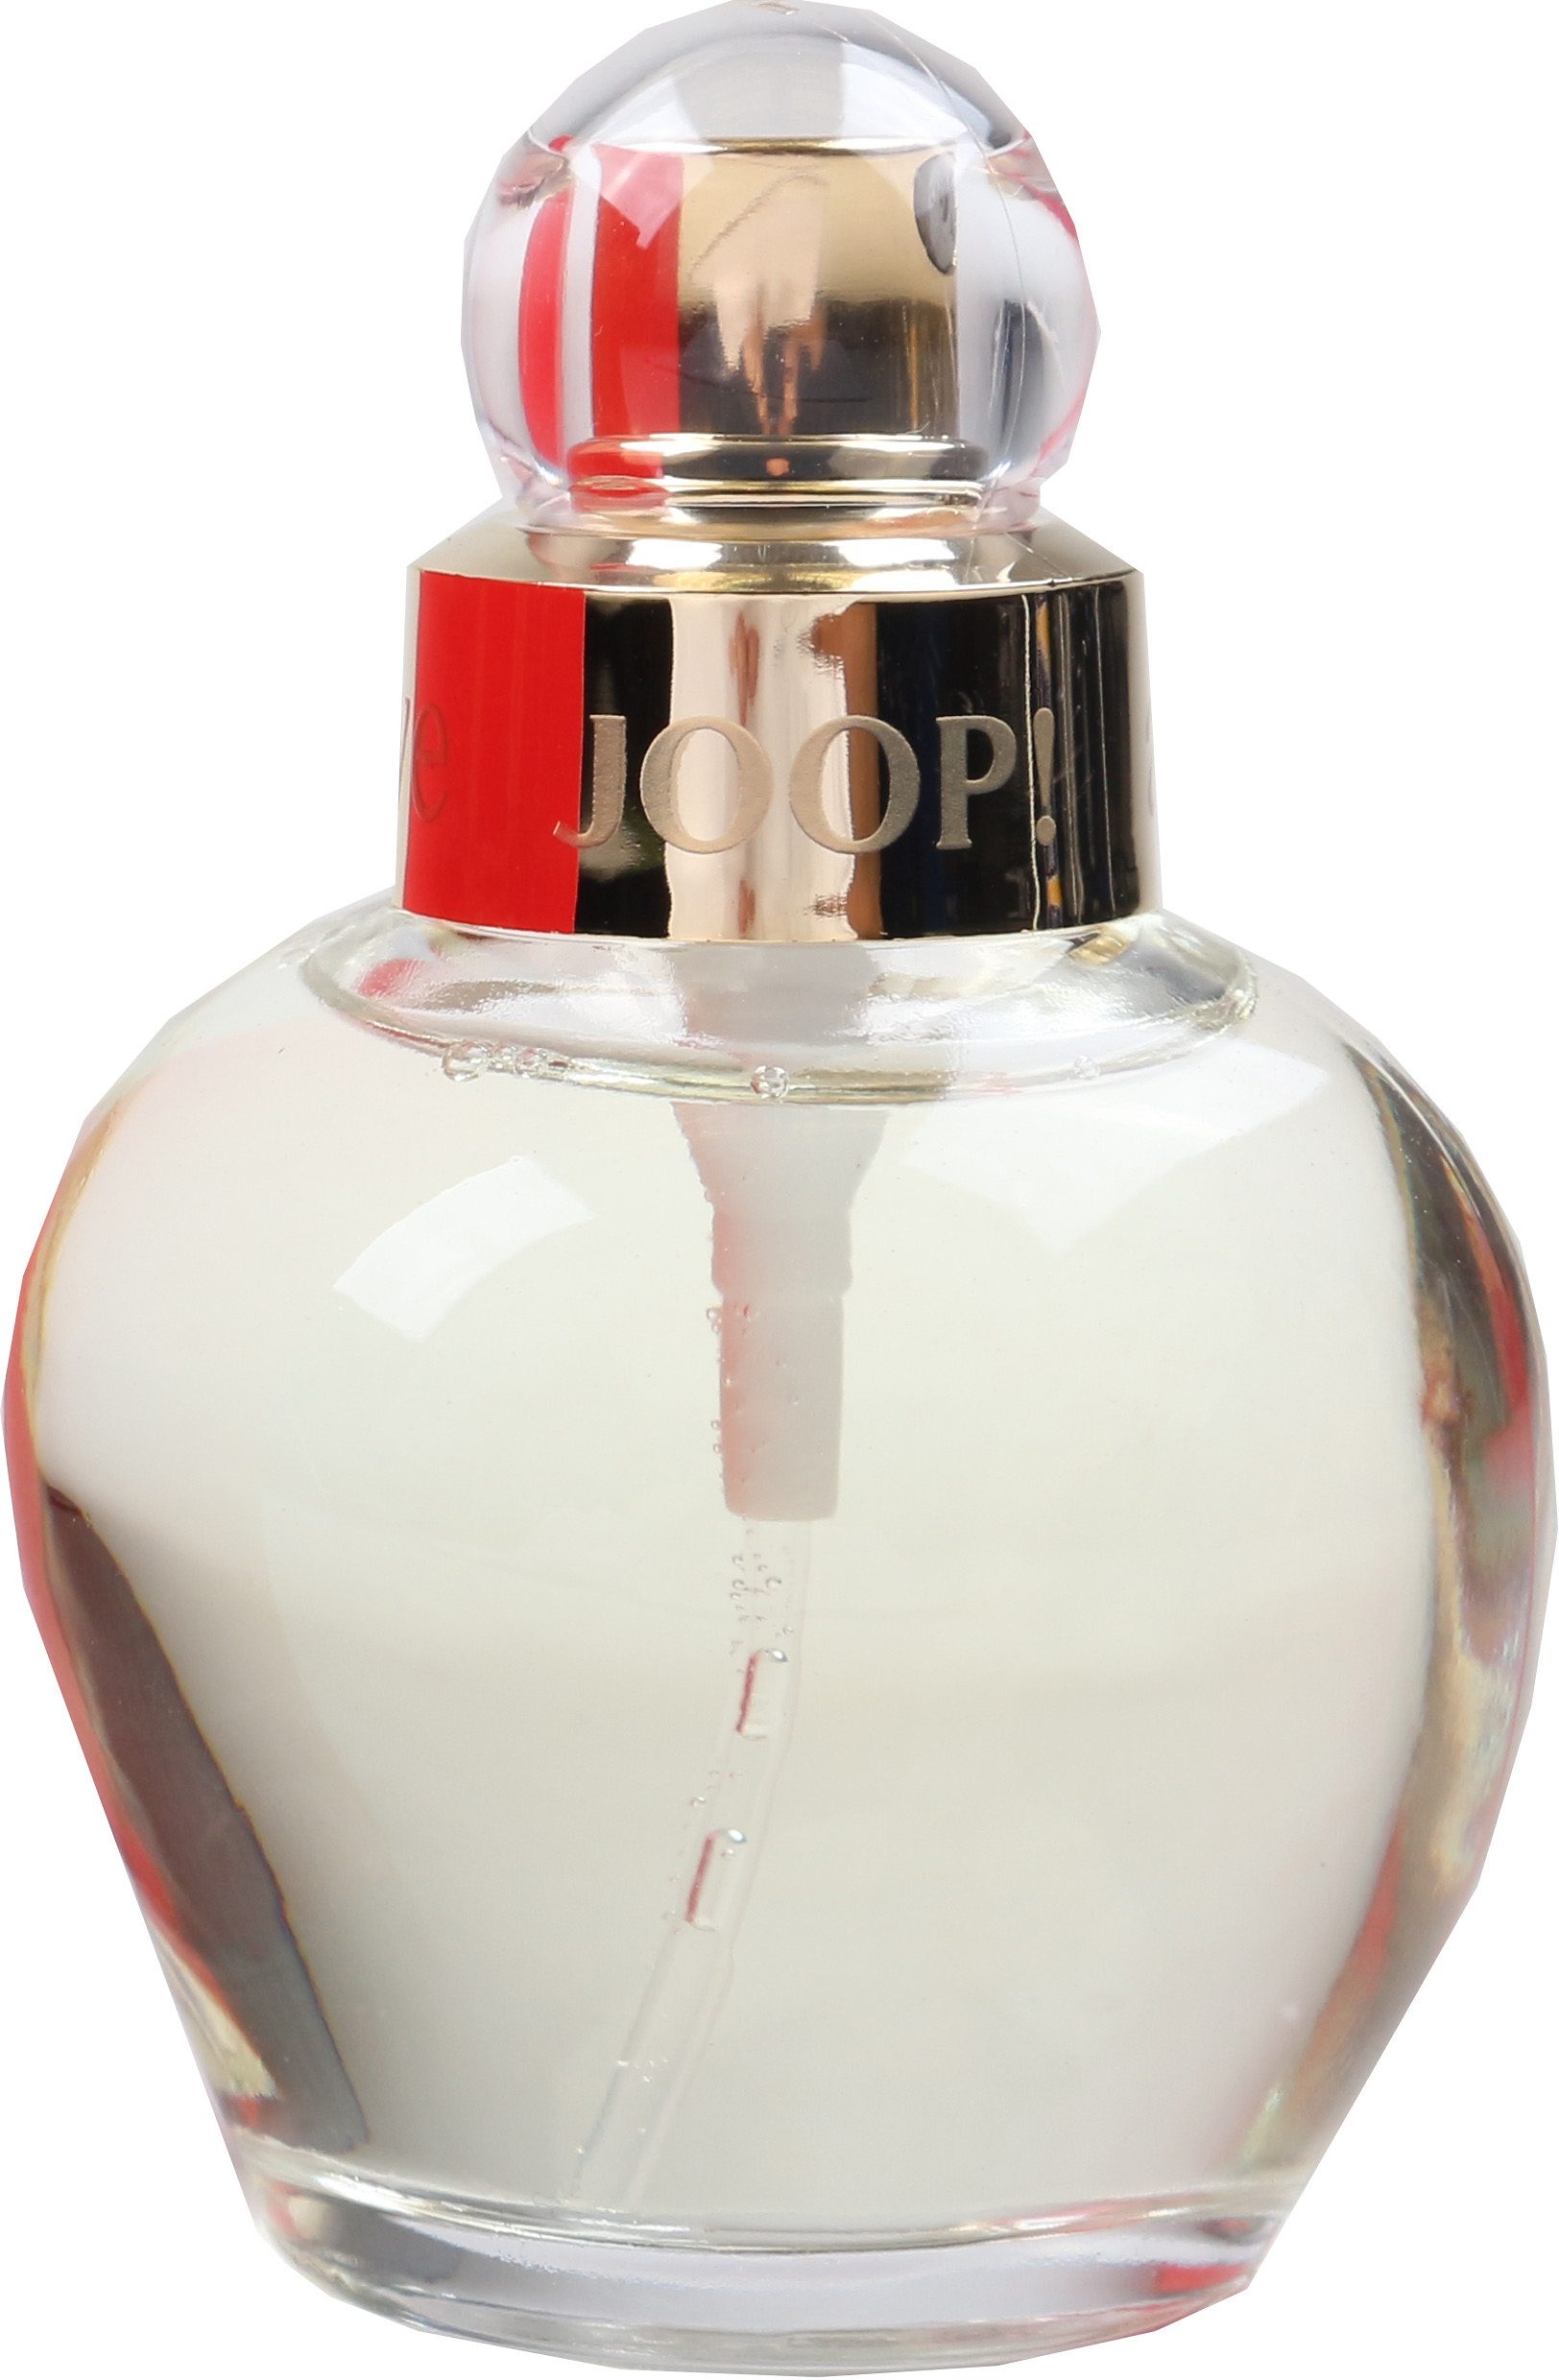 Joop! All about eve eau de parfum vapo female 40ml